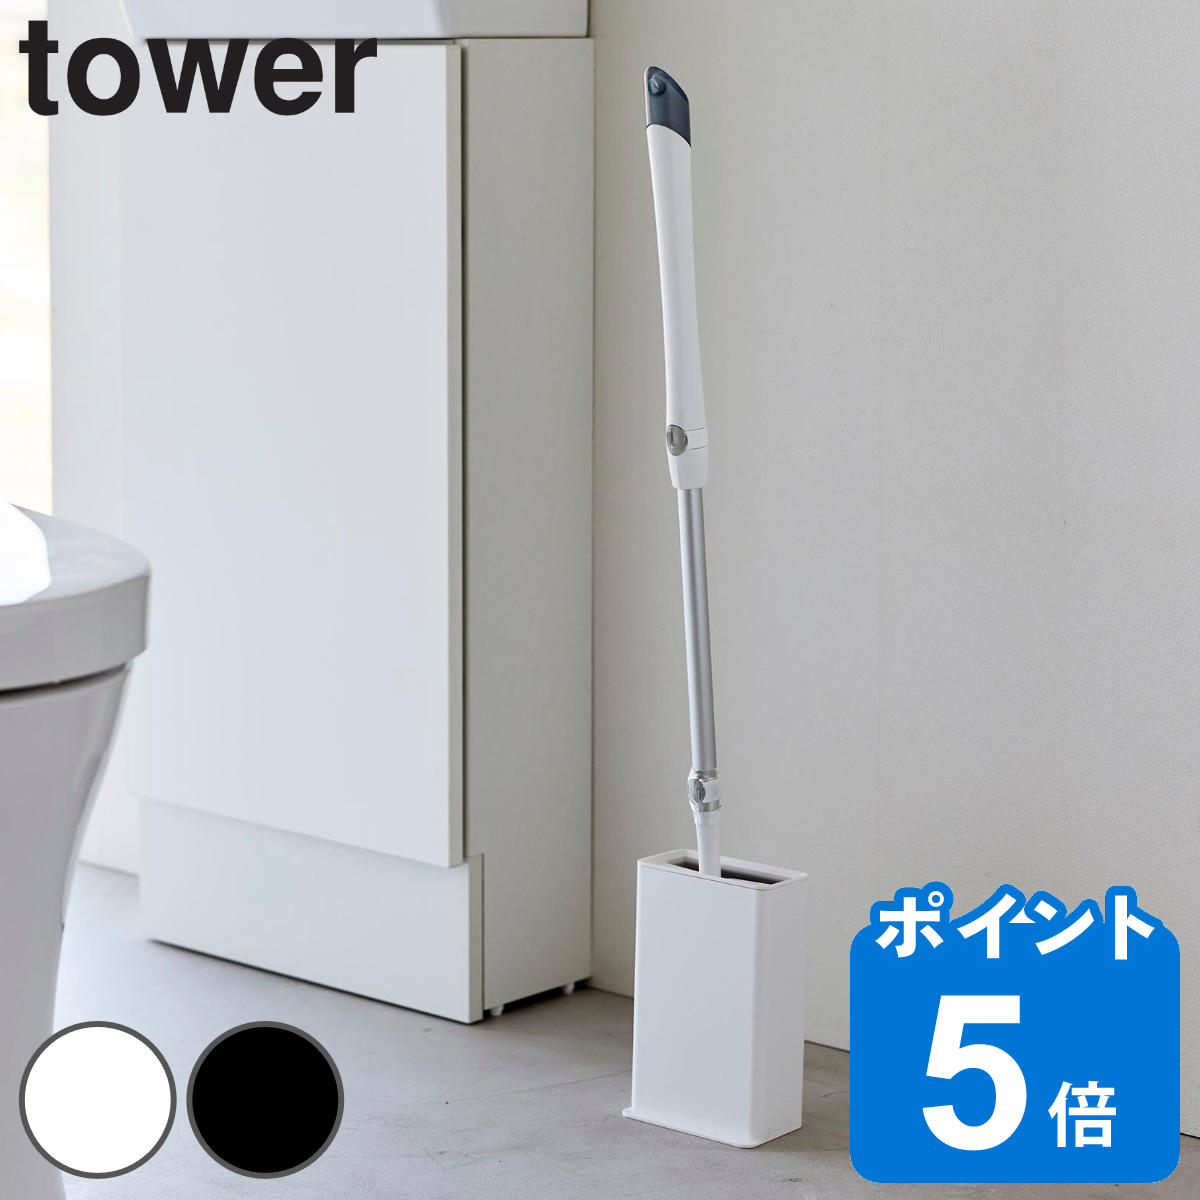 山崎実業 tower トイレワイパースタンド タワー